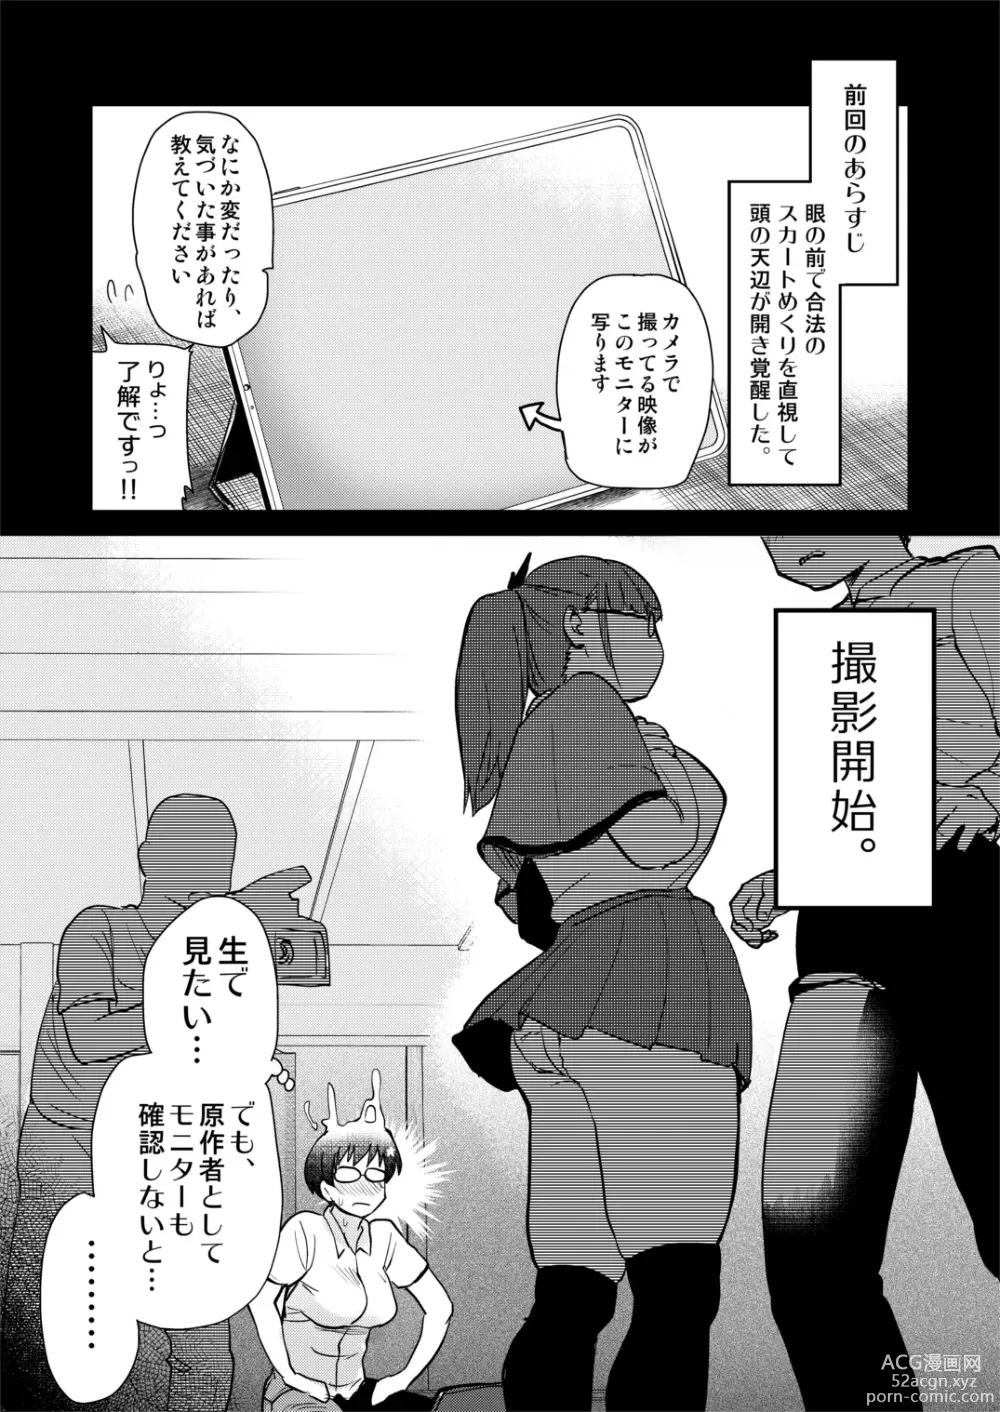 Page 15 of doujinshi Jibun no Kaita Manga ga Jissha AV ni!? Sekkaku nano de Satsuei Genba no Kengaku ni Ittekimashita.